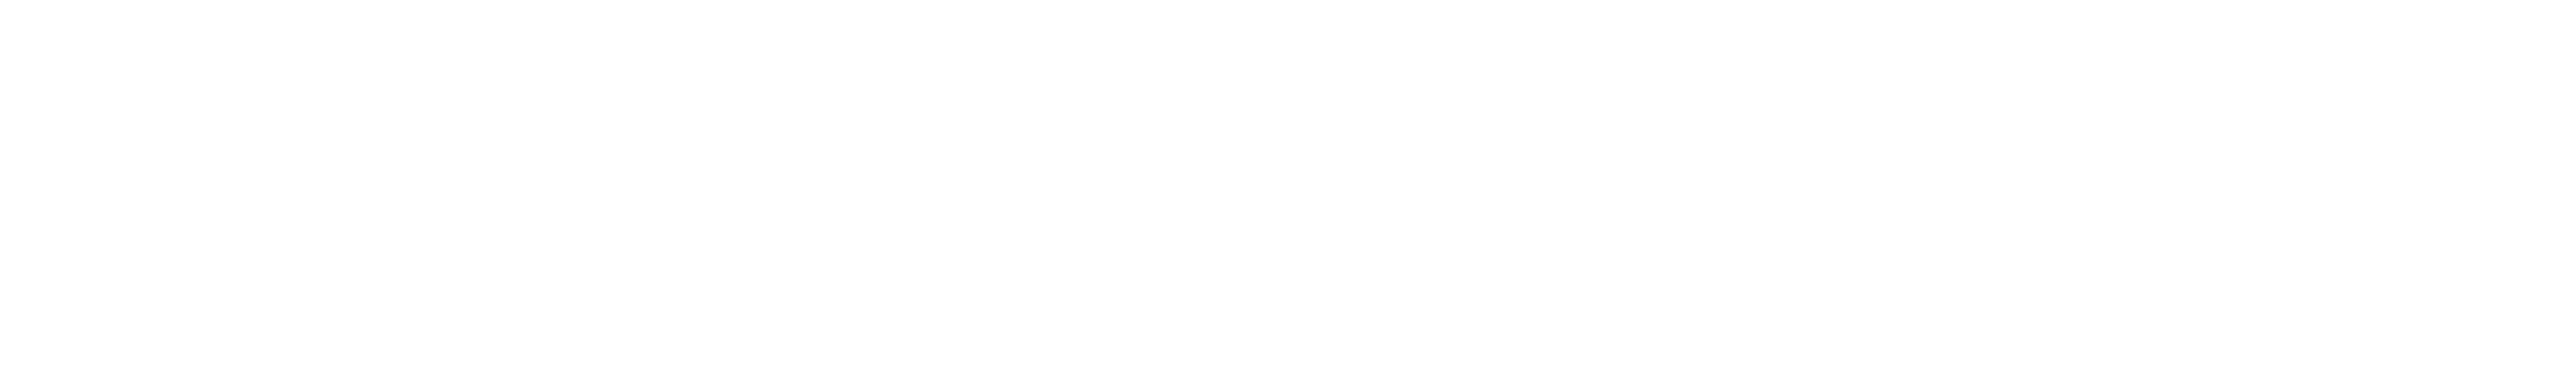 GDG Cloud Abidjan - Logo